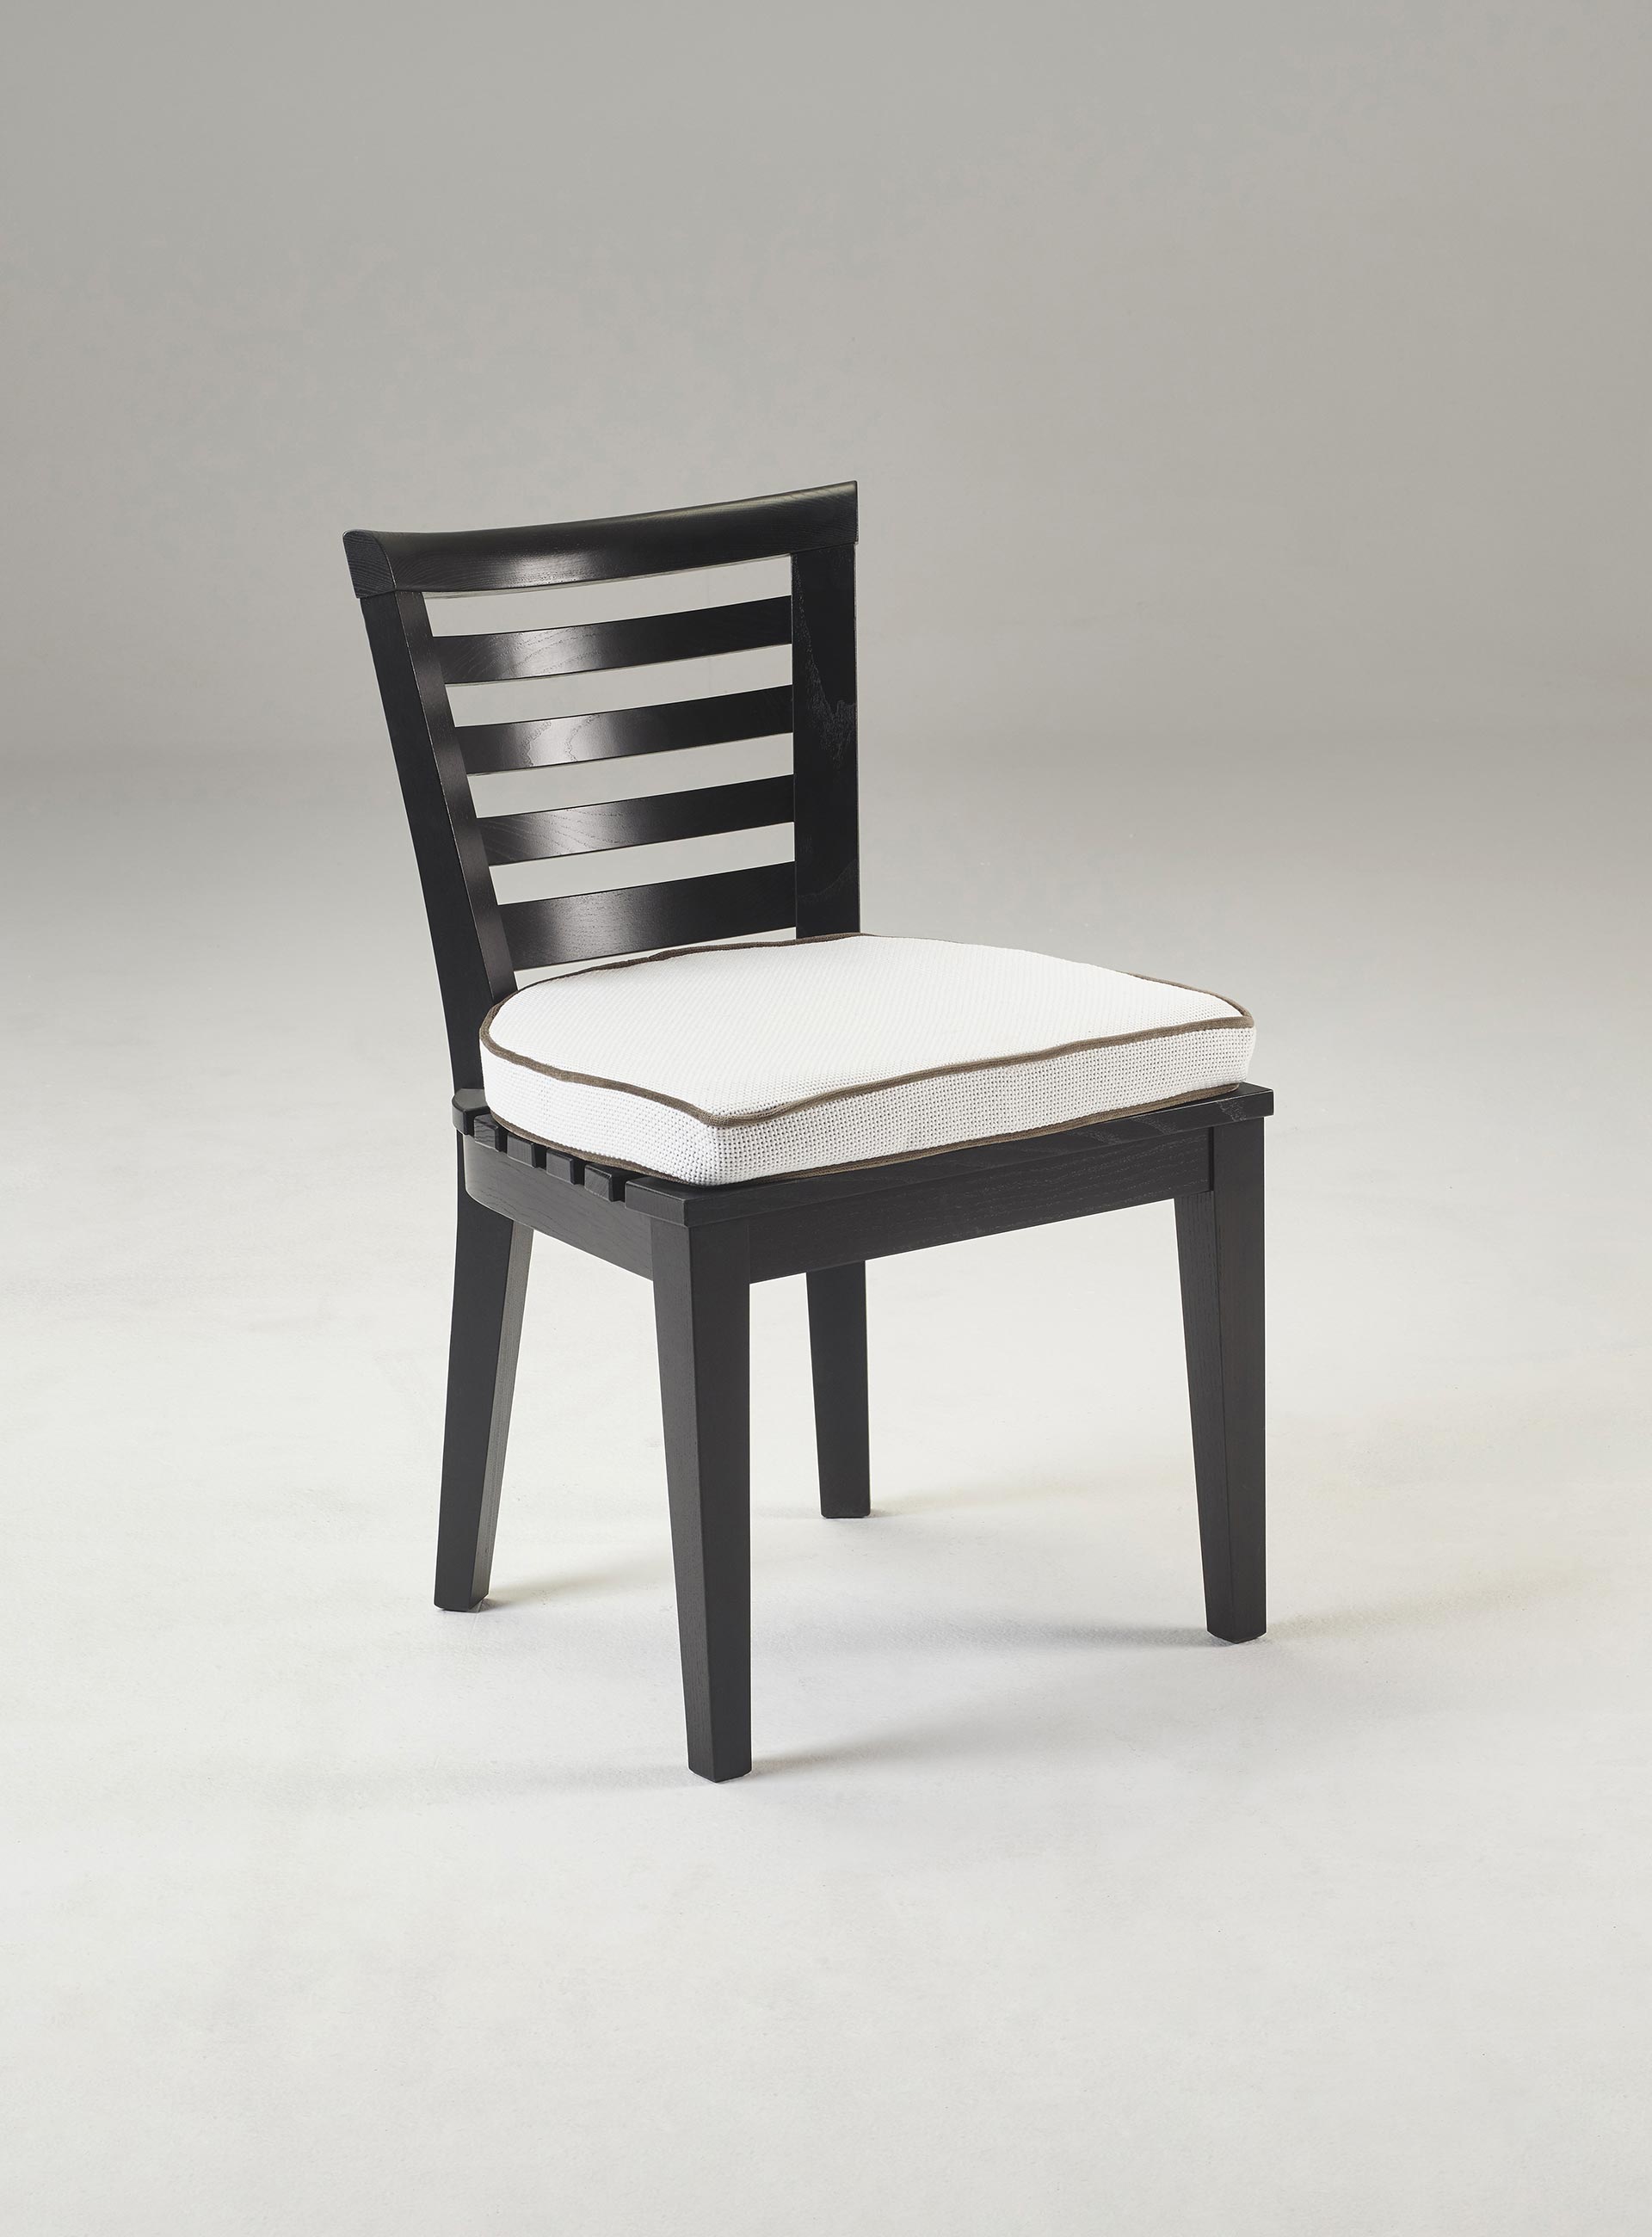 Varenna è una sedia da esterni in legno con o senza braccioli e cuscino in tessuto o pelle, del catalogo da esterni di Promemoria | Promemoria